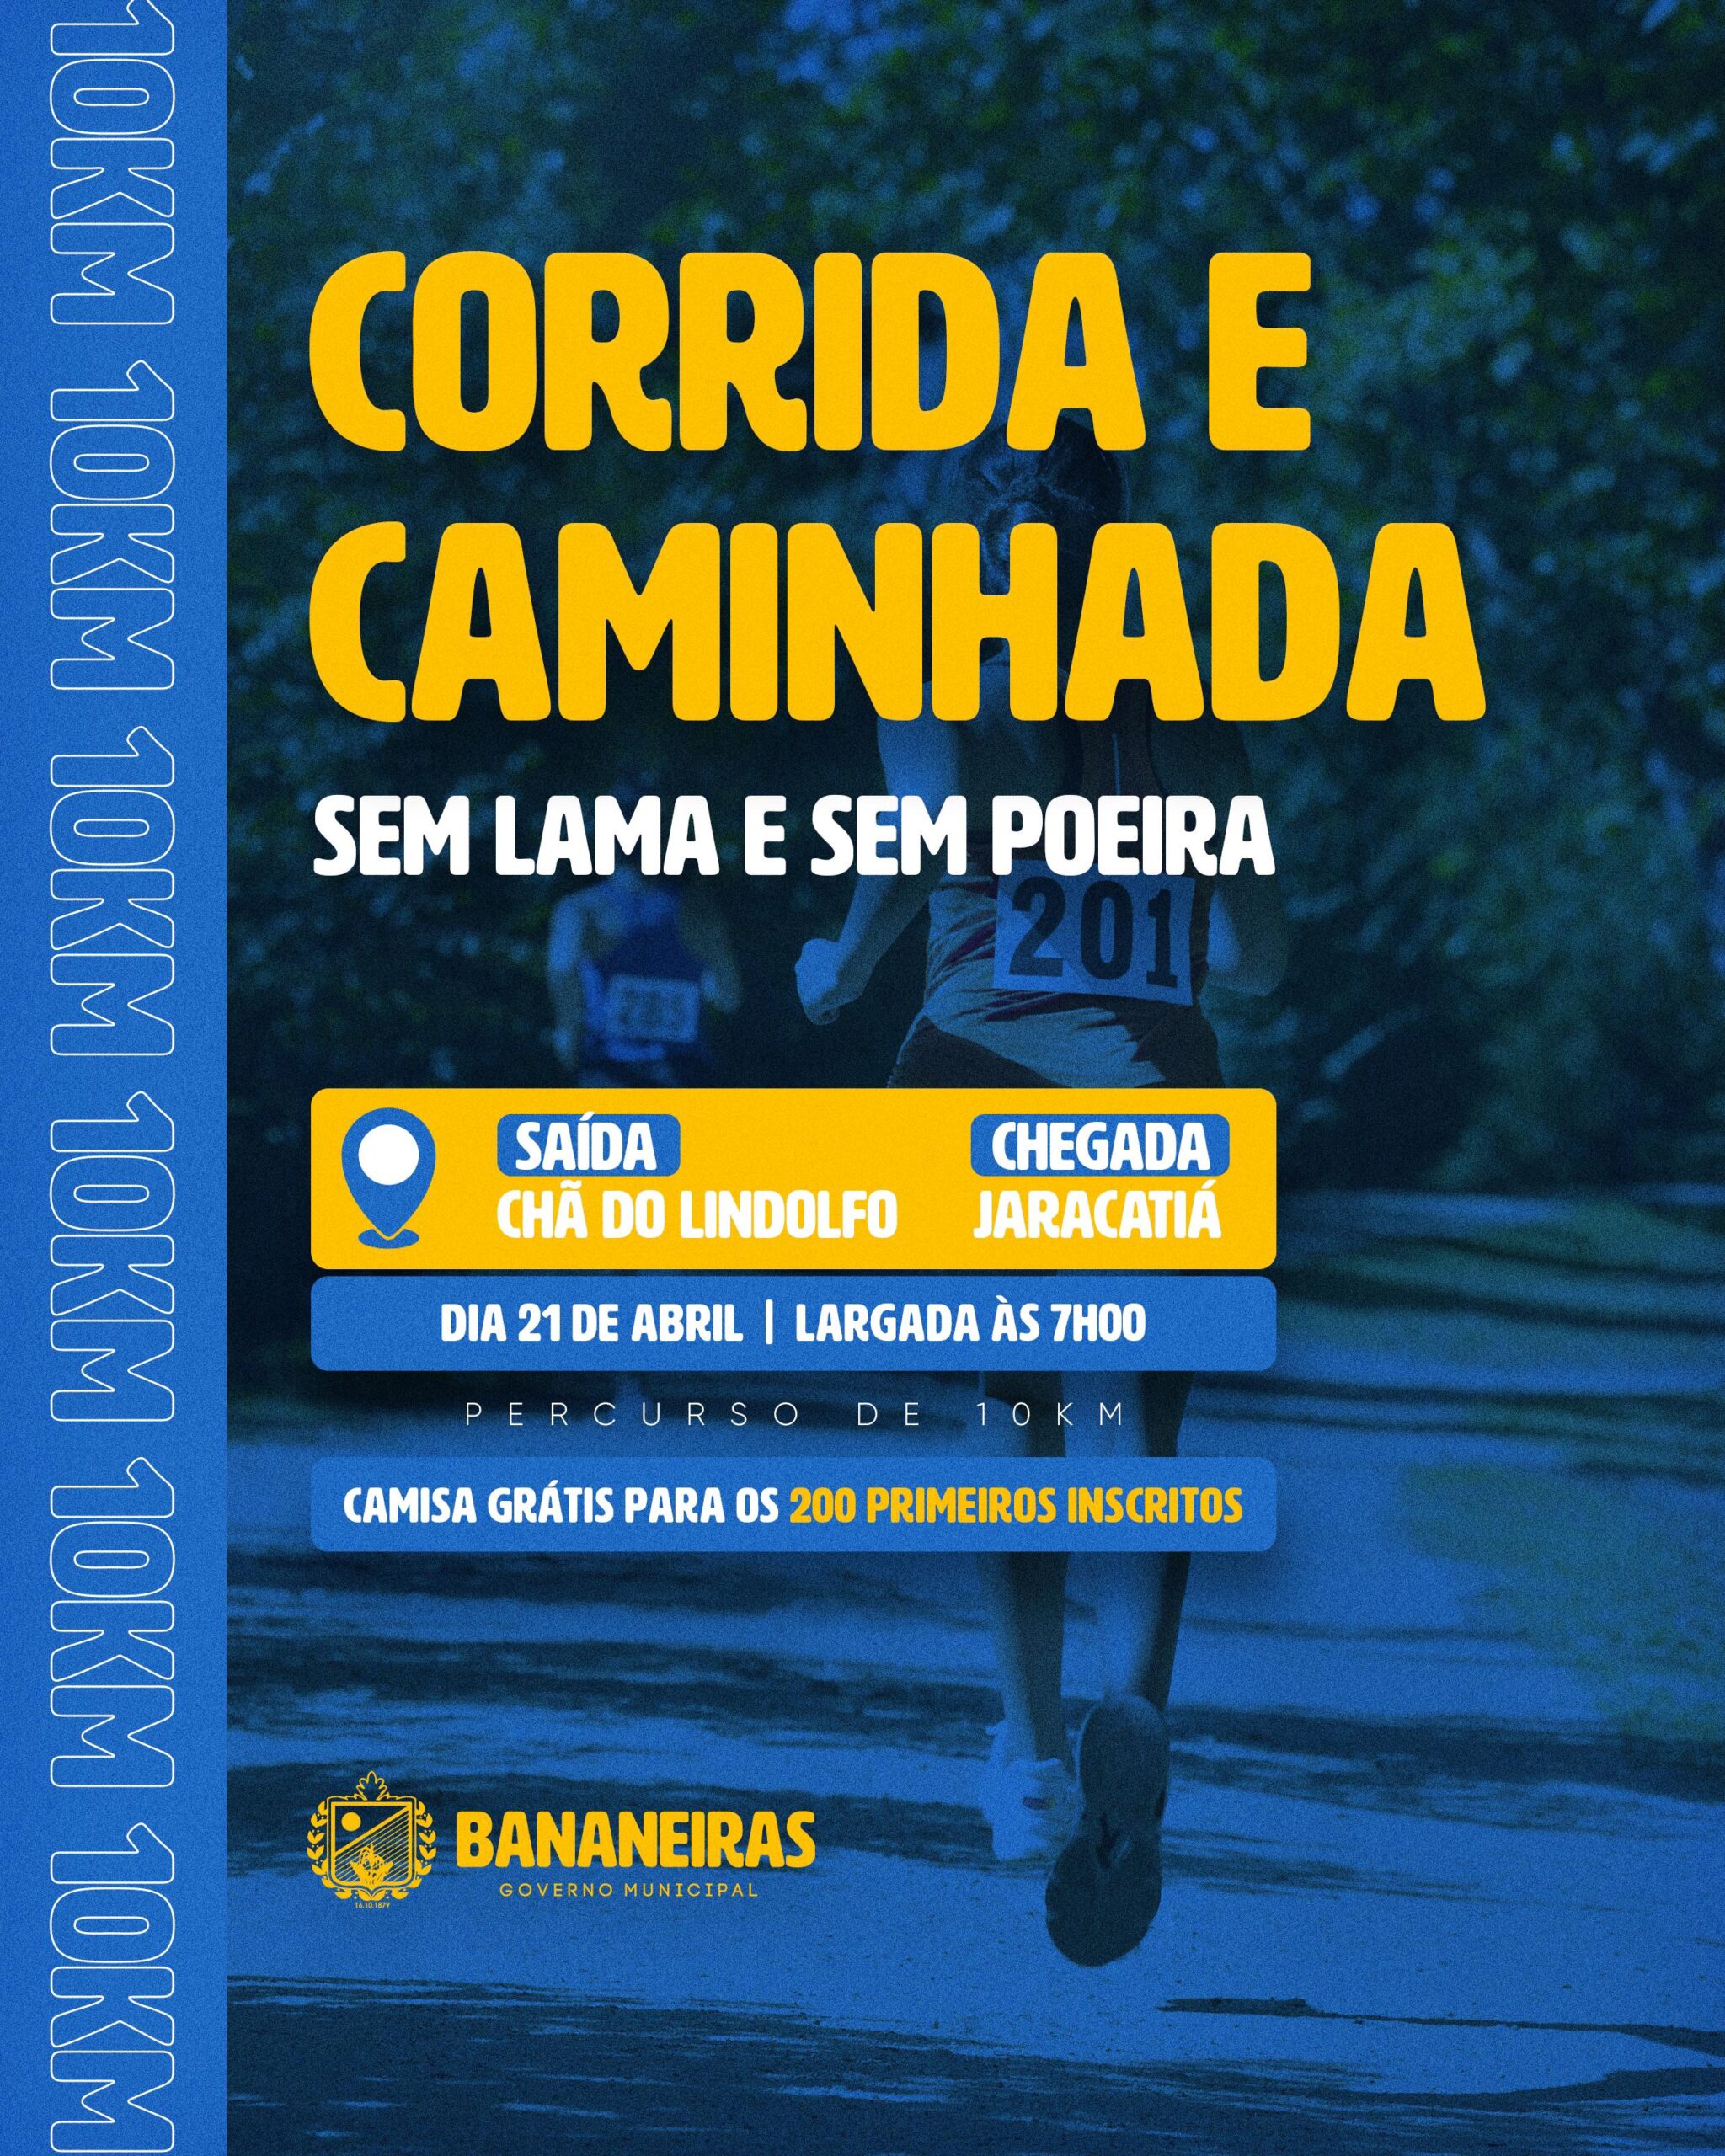 Prefeitura de Bananeiras abre inscrições para a Corrida e Caminhada Sem Lama e Sem Poeira